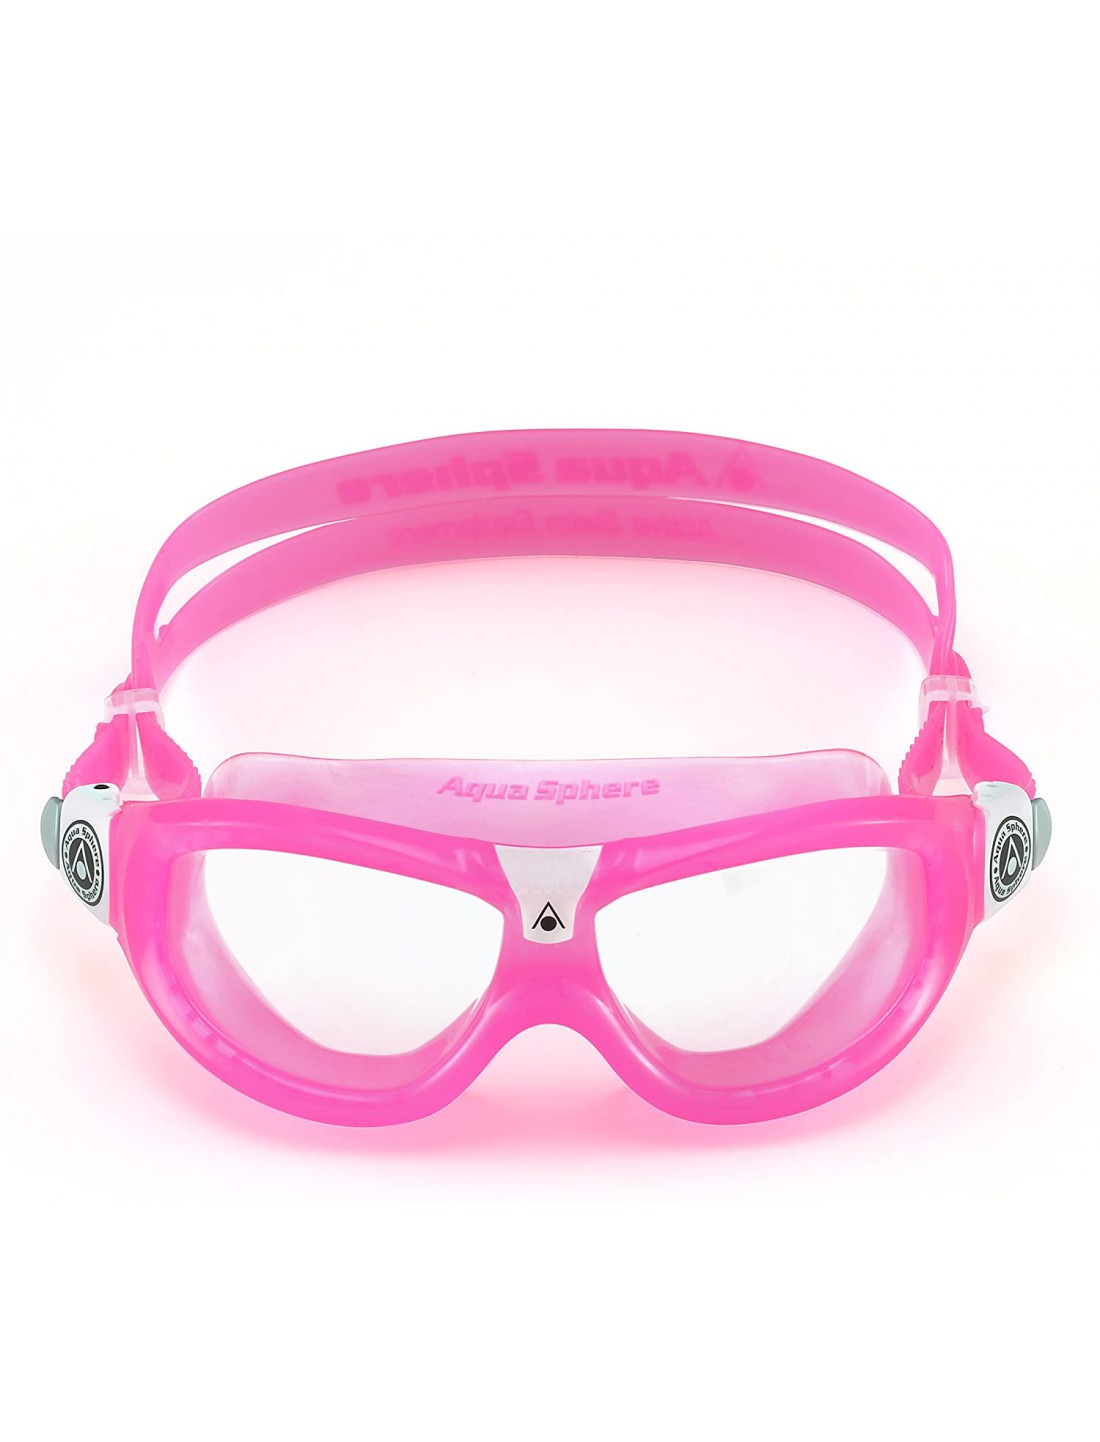 Gafas de natación Seal Kid 2 Rosa Chicle. Aqua Sphere